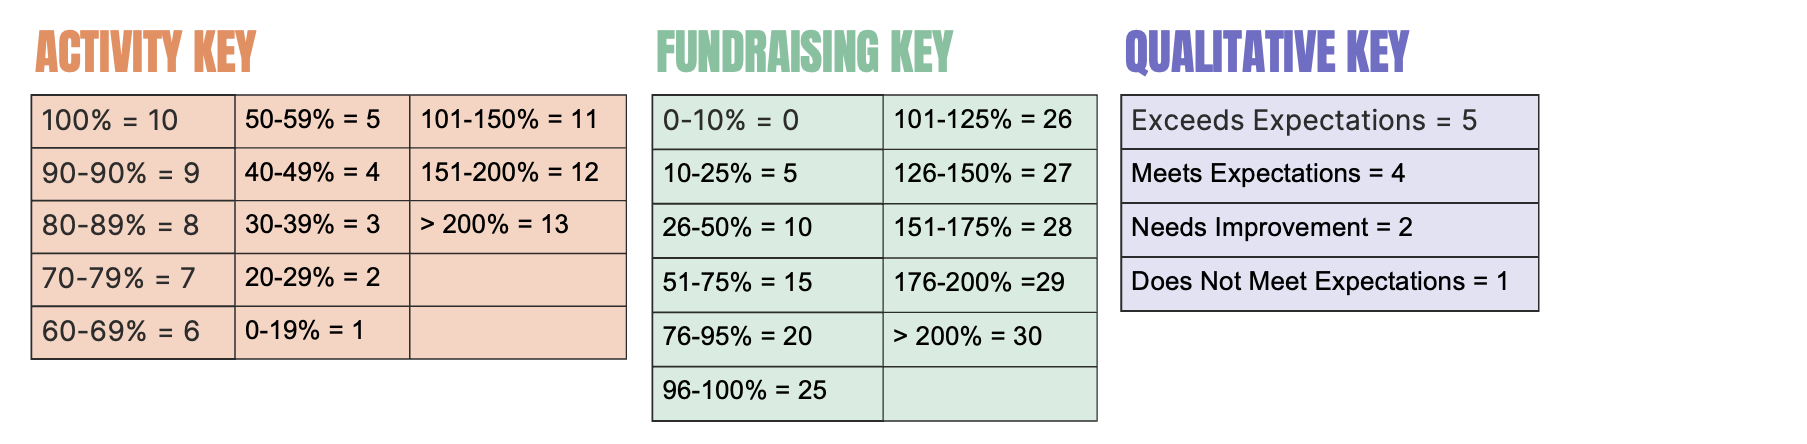 Fundraising Metrics Key